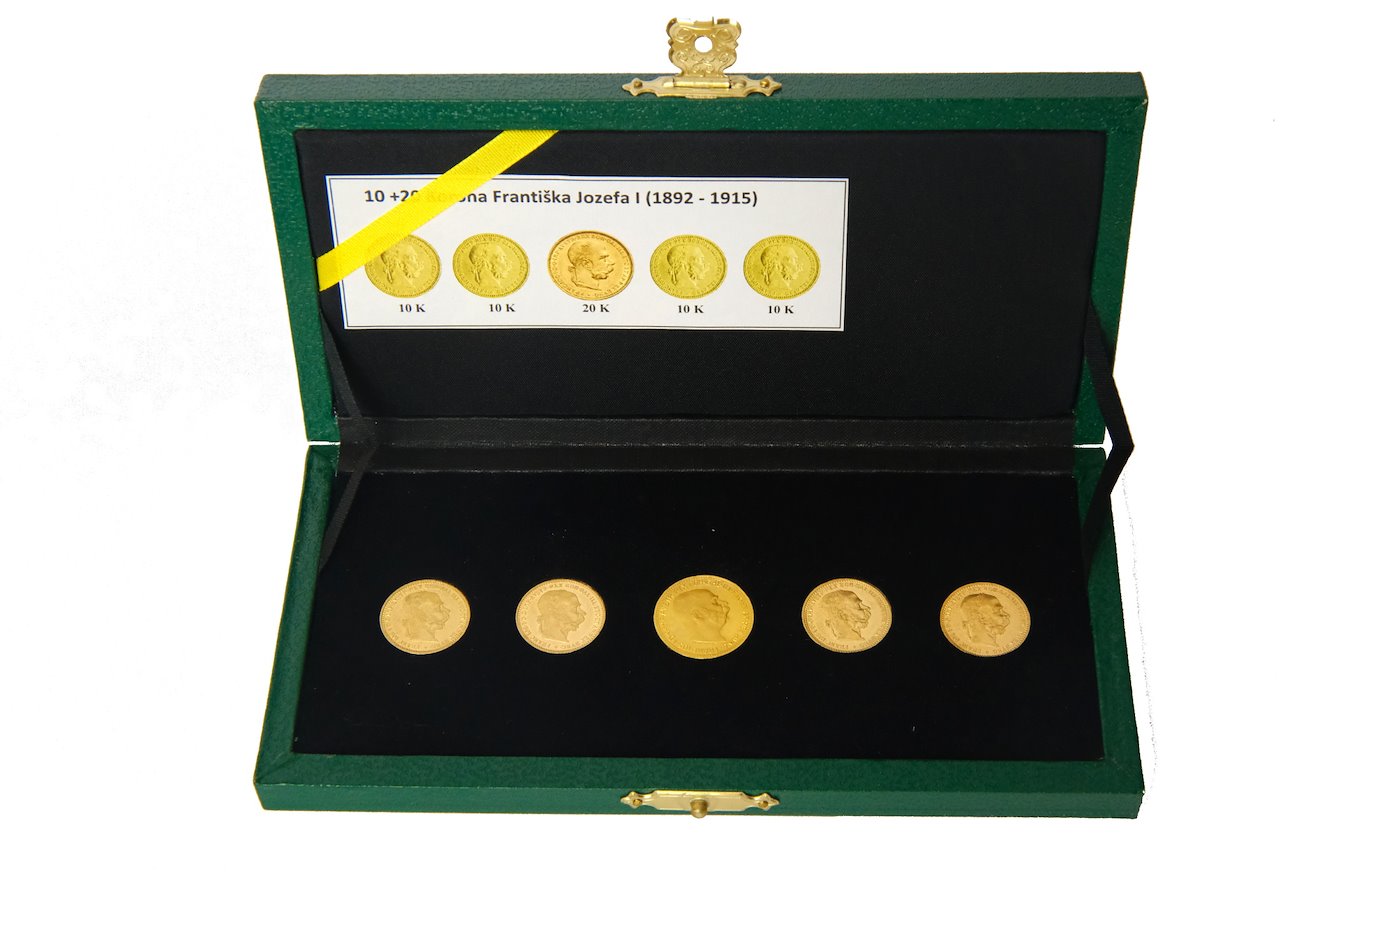 Mince -  SADA 5 mincí Rakousko Uhersko v  etue  zlaté mince 10 koruny rakouské 1896,7 1905,6 plus 20 koruna 1915. Zlato 900/1000, hrubá hmotnost mince 3,387g.